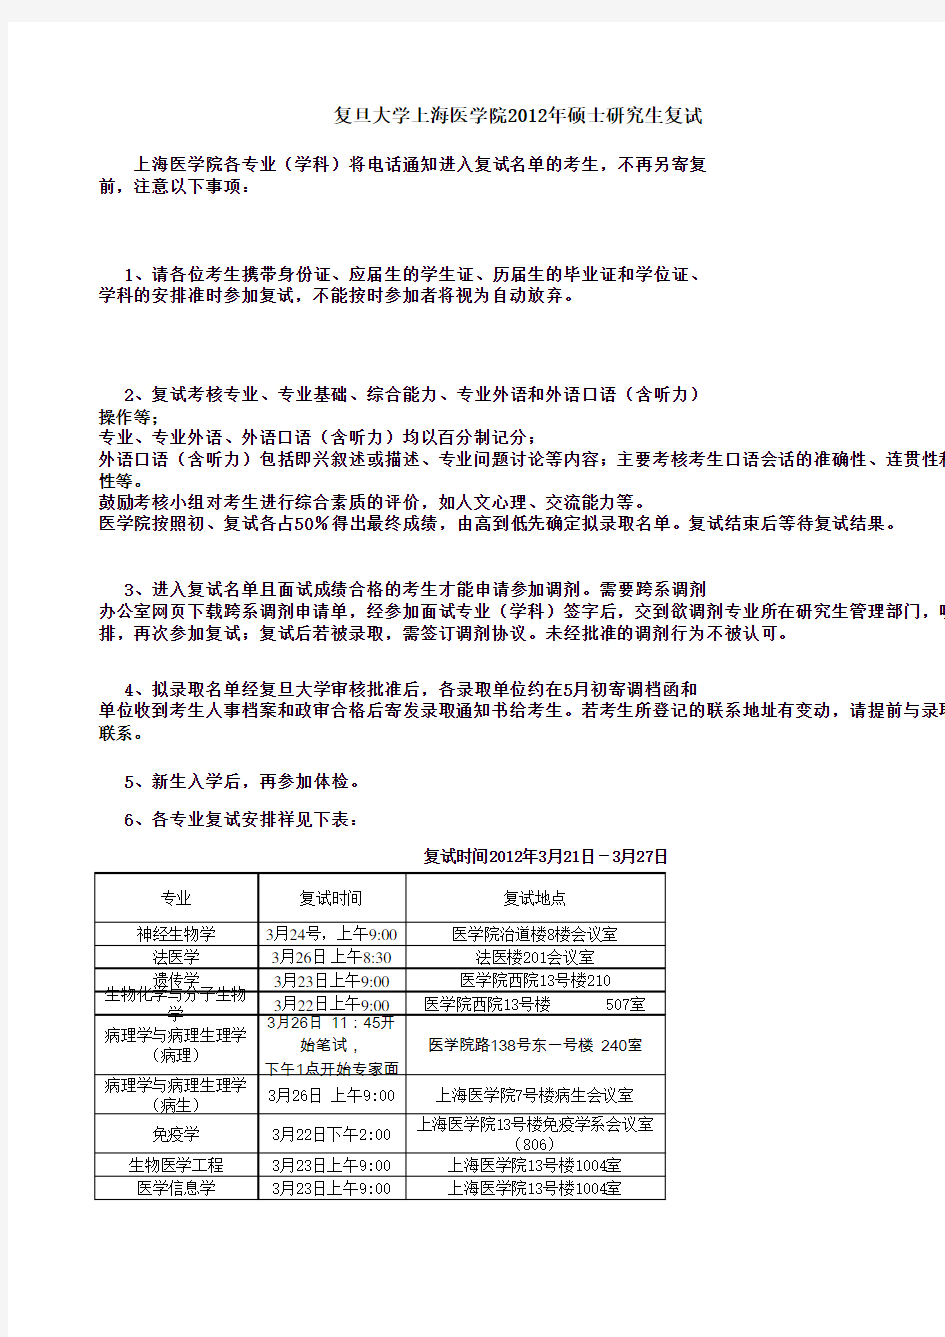 复旦大学上海医学院2012年硕士复试安排表公告